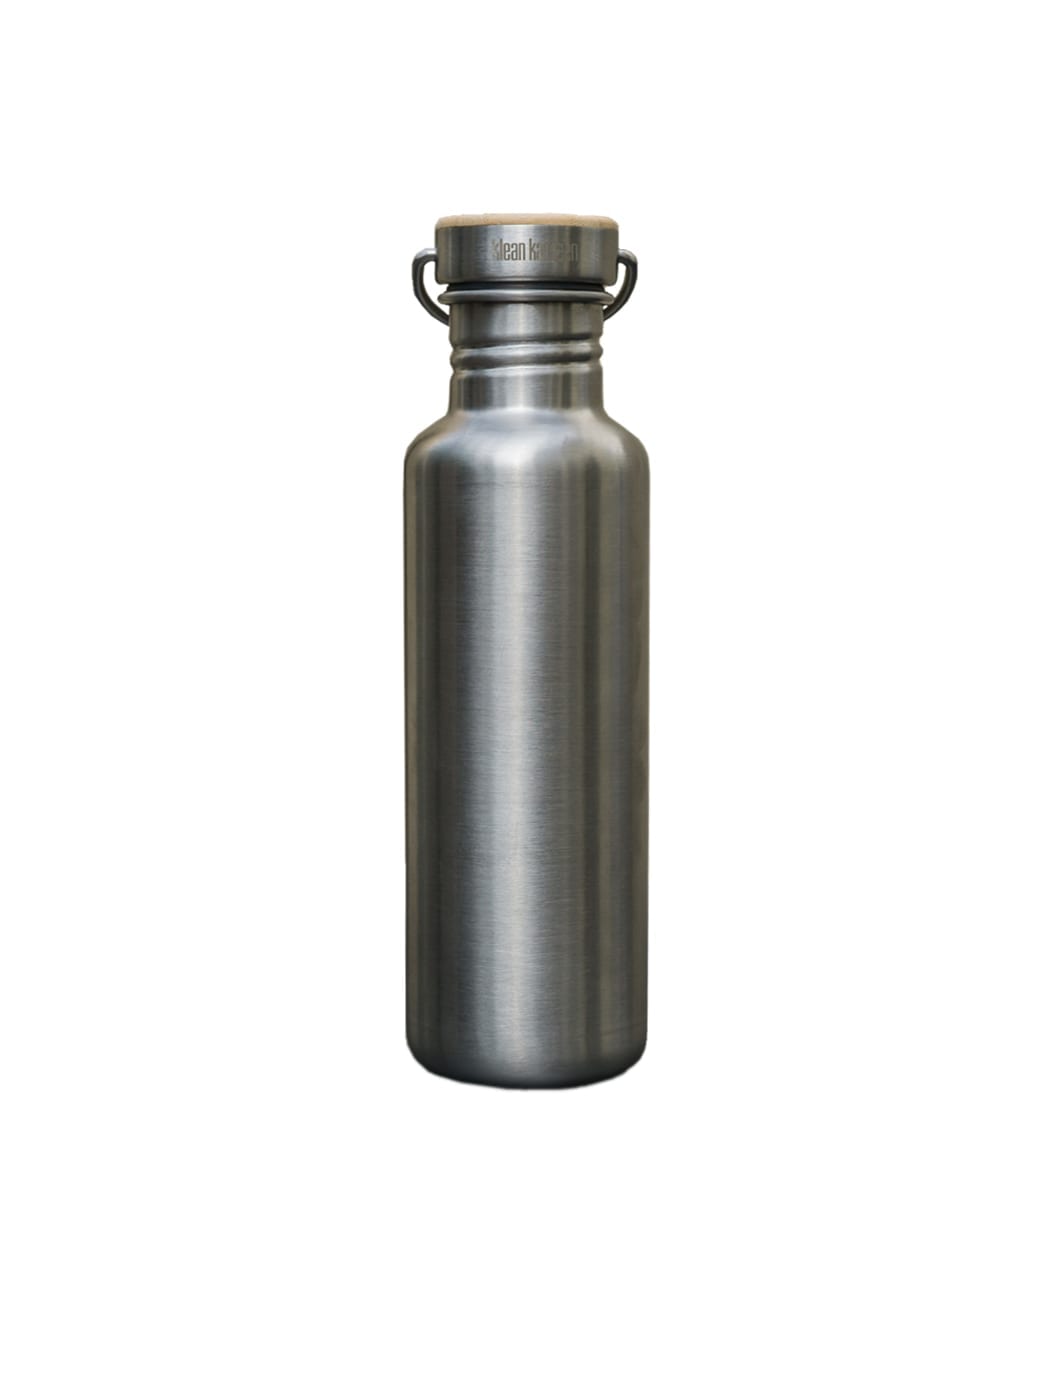 Produktbild einer FUXBAU Edelstahl Trinklasche. 